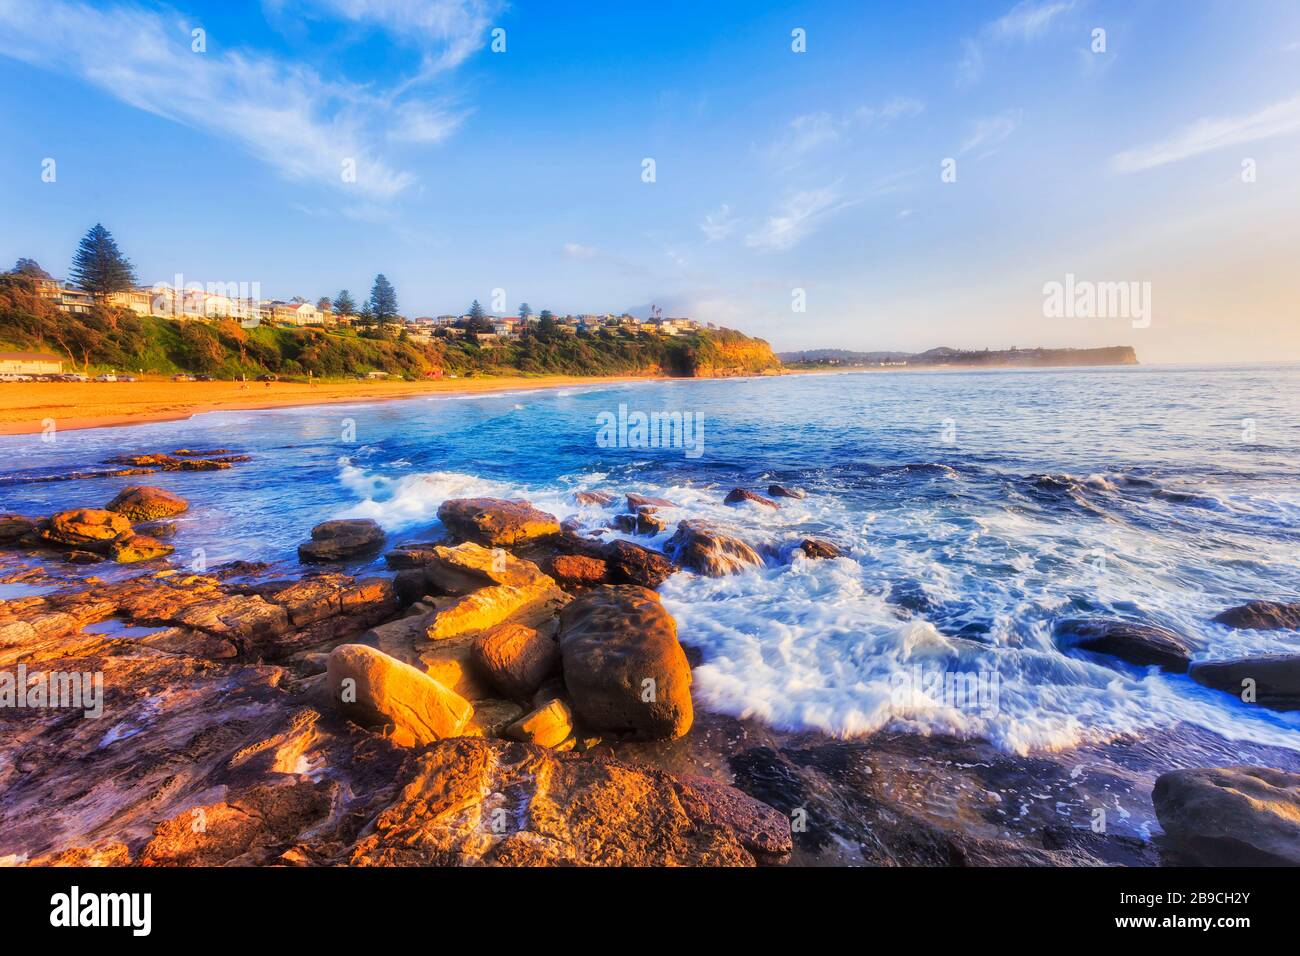 Les eaux bleues propres de la plage de Warrienwood, au large de Turimetta, longeront les plages du nord de Sydney, sur la côte du Pacifique. Banque D'Images